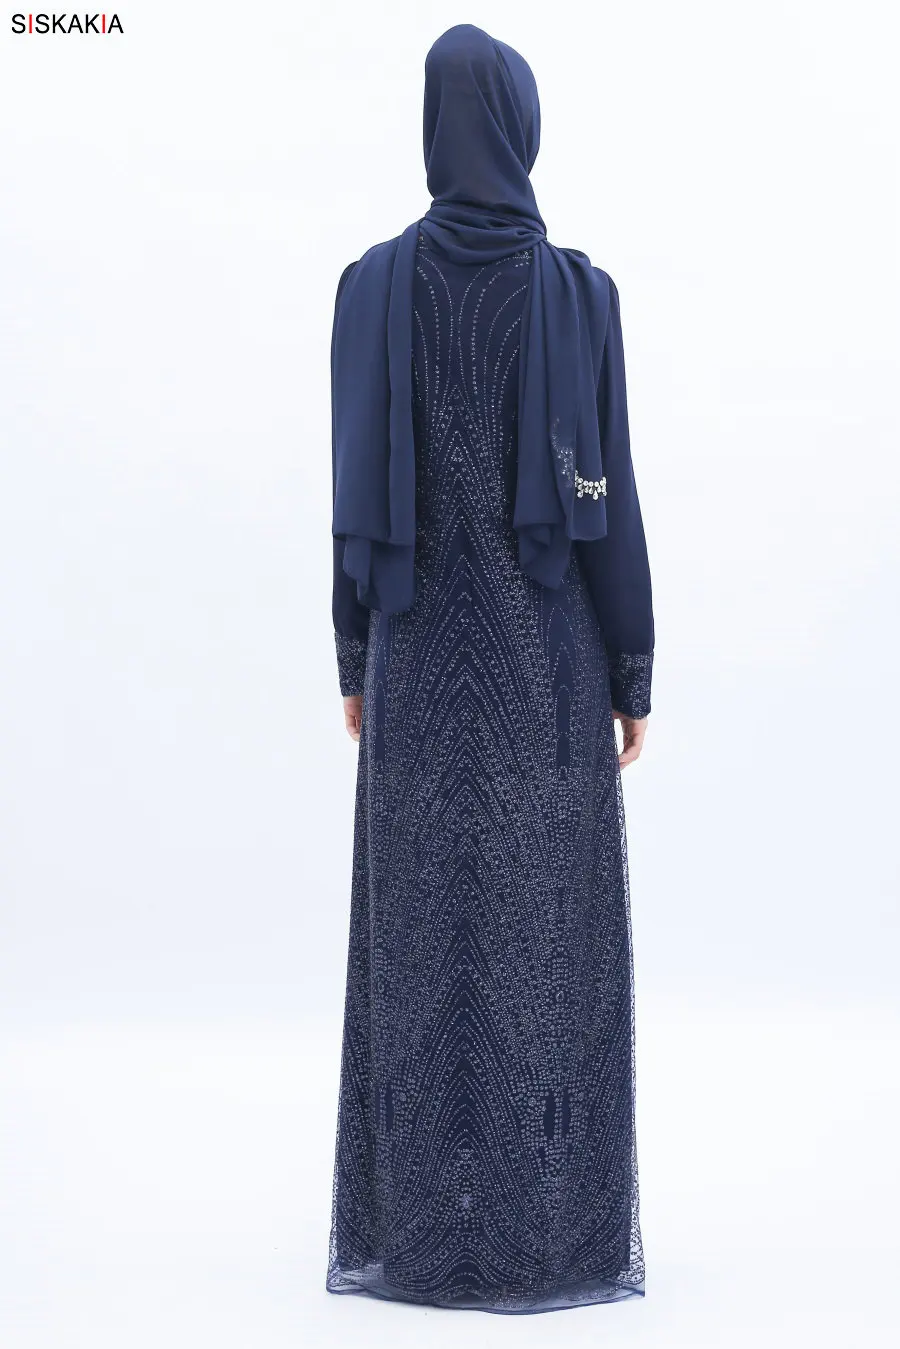 Siskakia роскошь высокого класса сетка Hox fix Rhinestone женское длинное платье трапециевидной формы высокая плотность шифон подкладка Дубайский